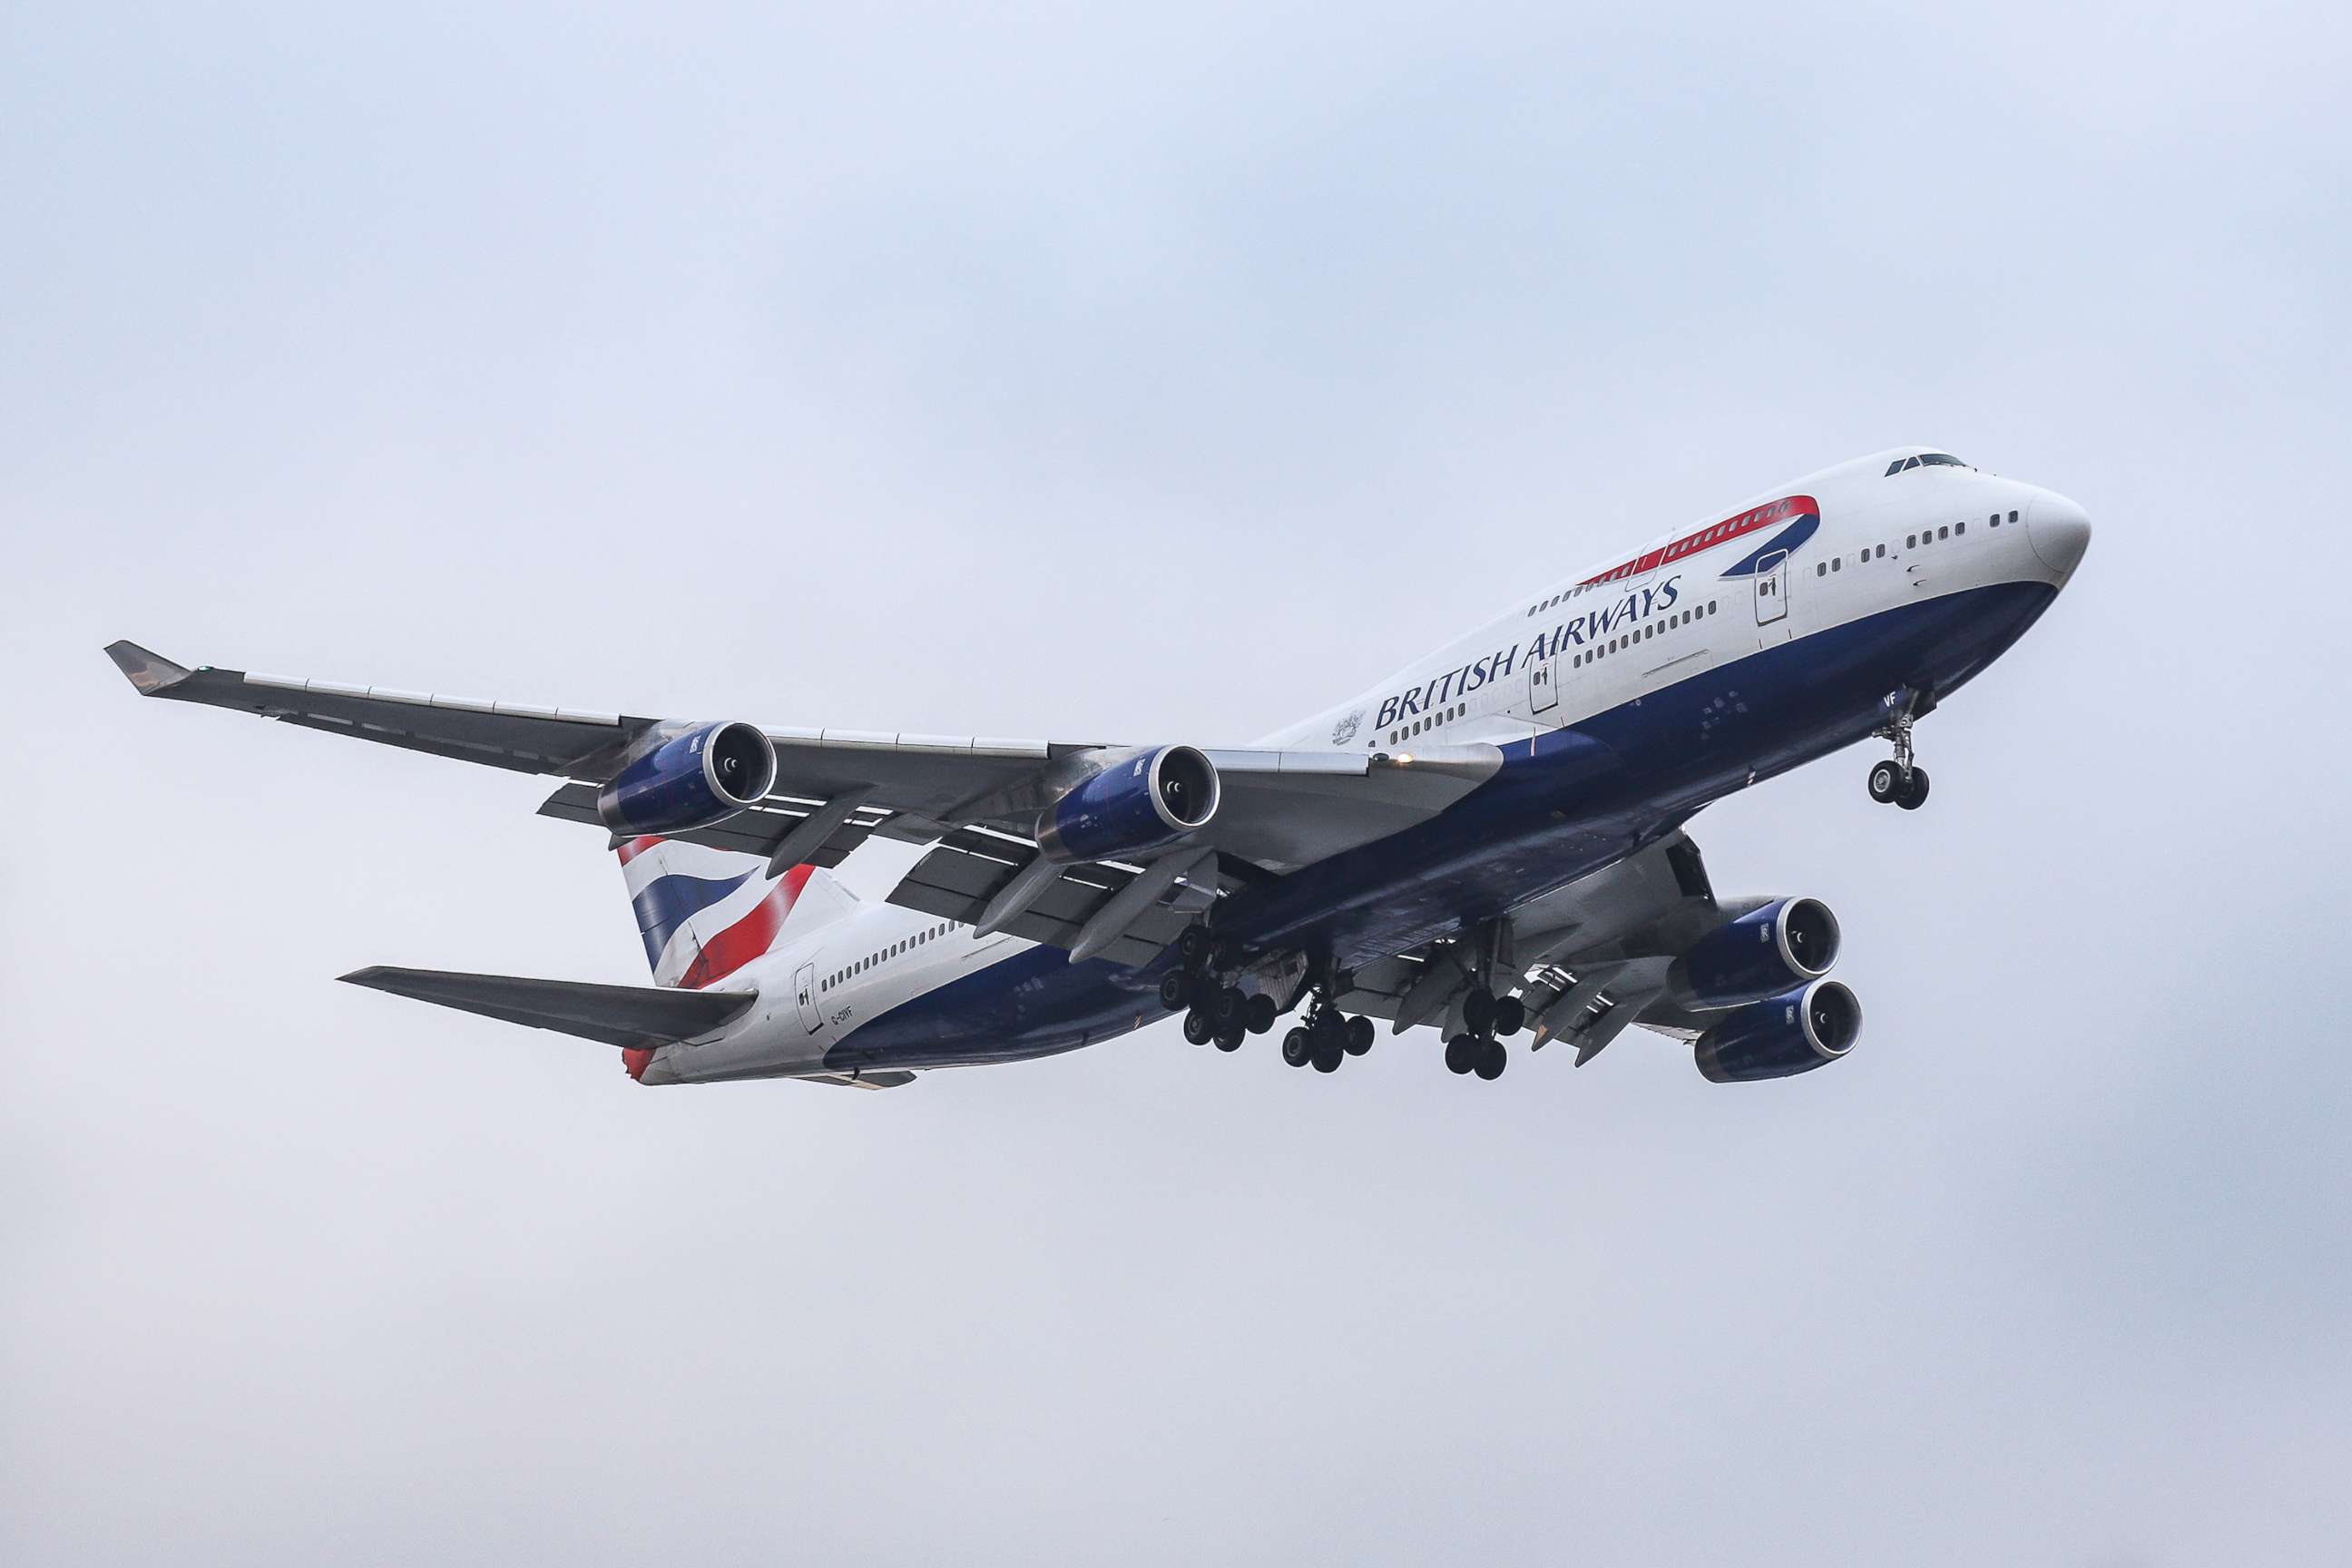 PHOTO: A British Airways Boeing 747-400 airplane lands at Heathrow International Airport in London, August, 2 2019.